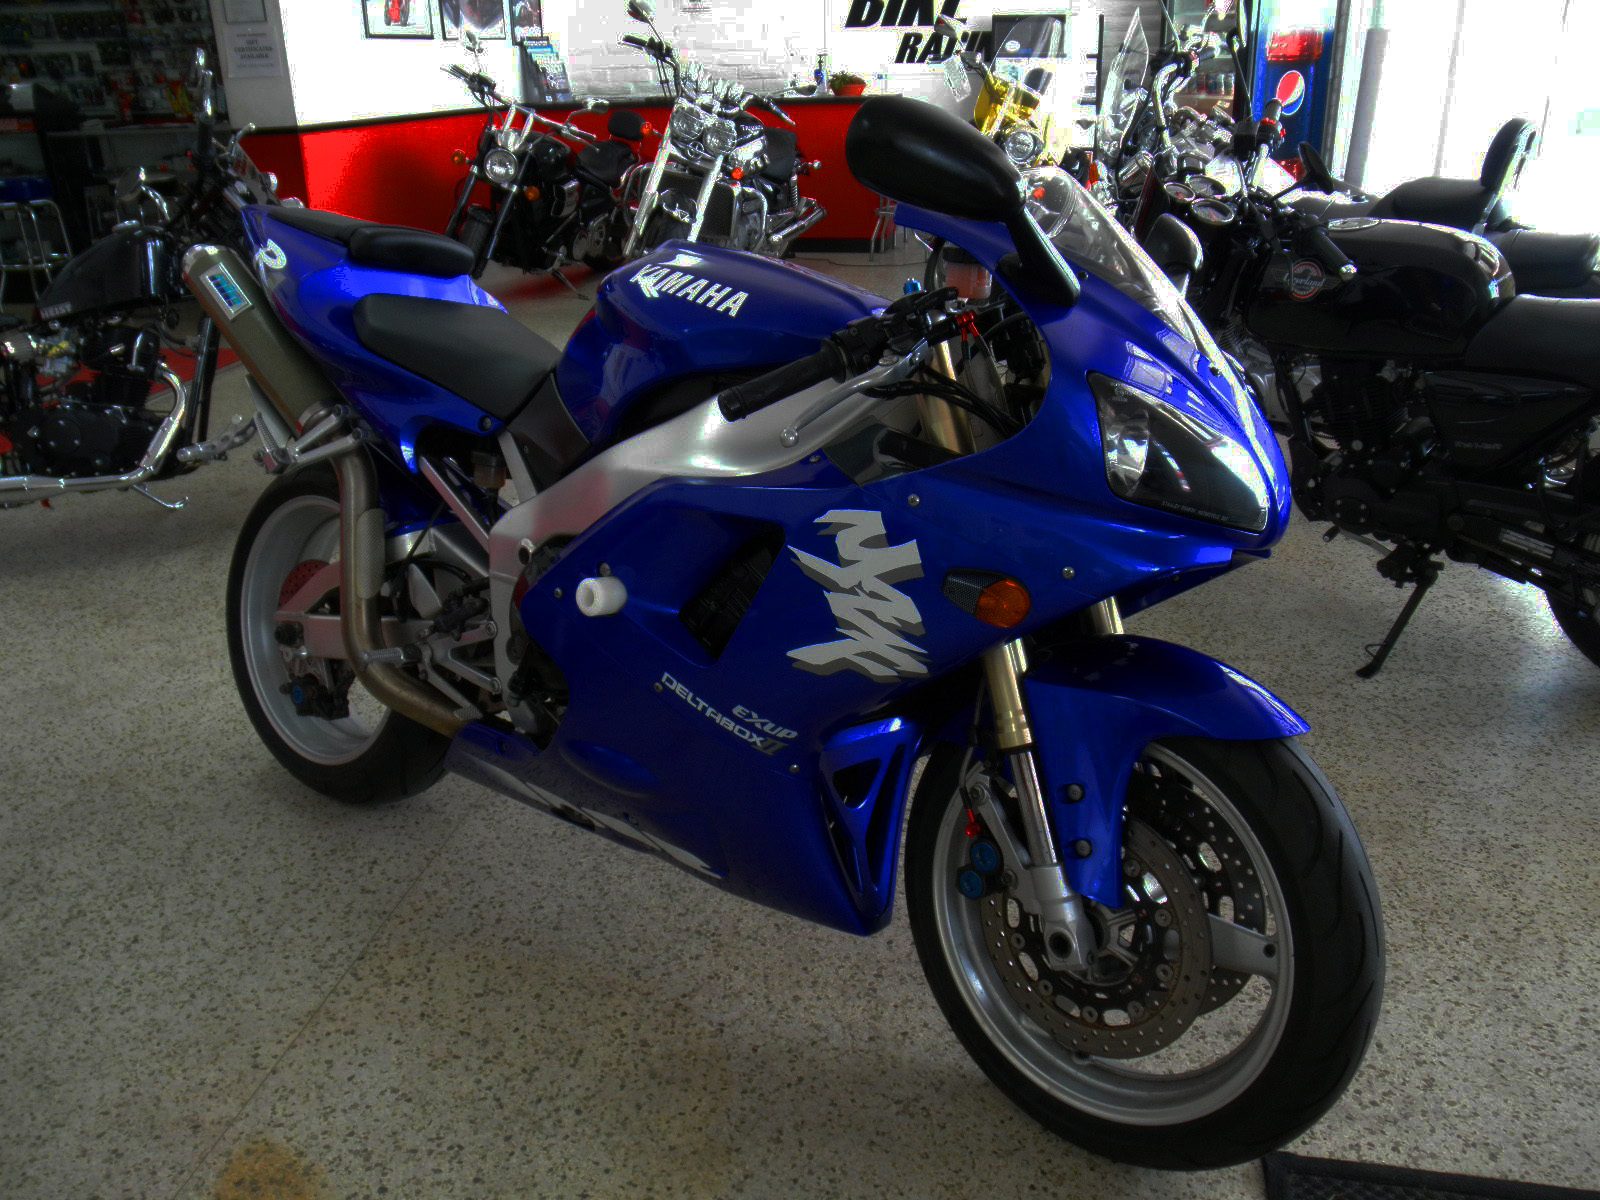 Yamaha, Motorcycle Wiki